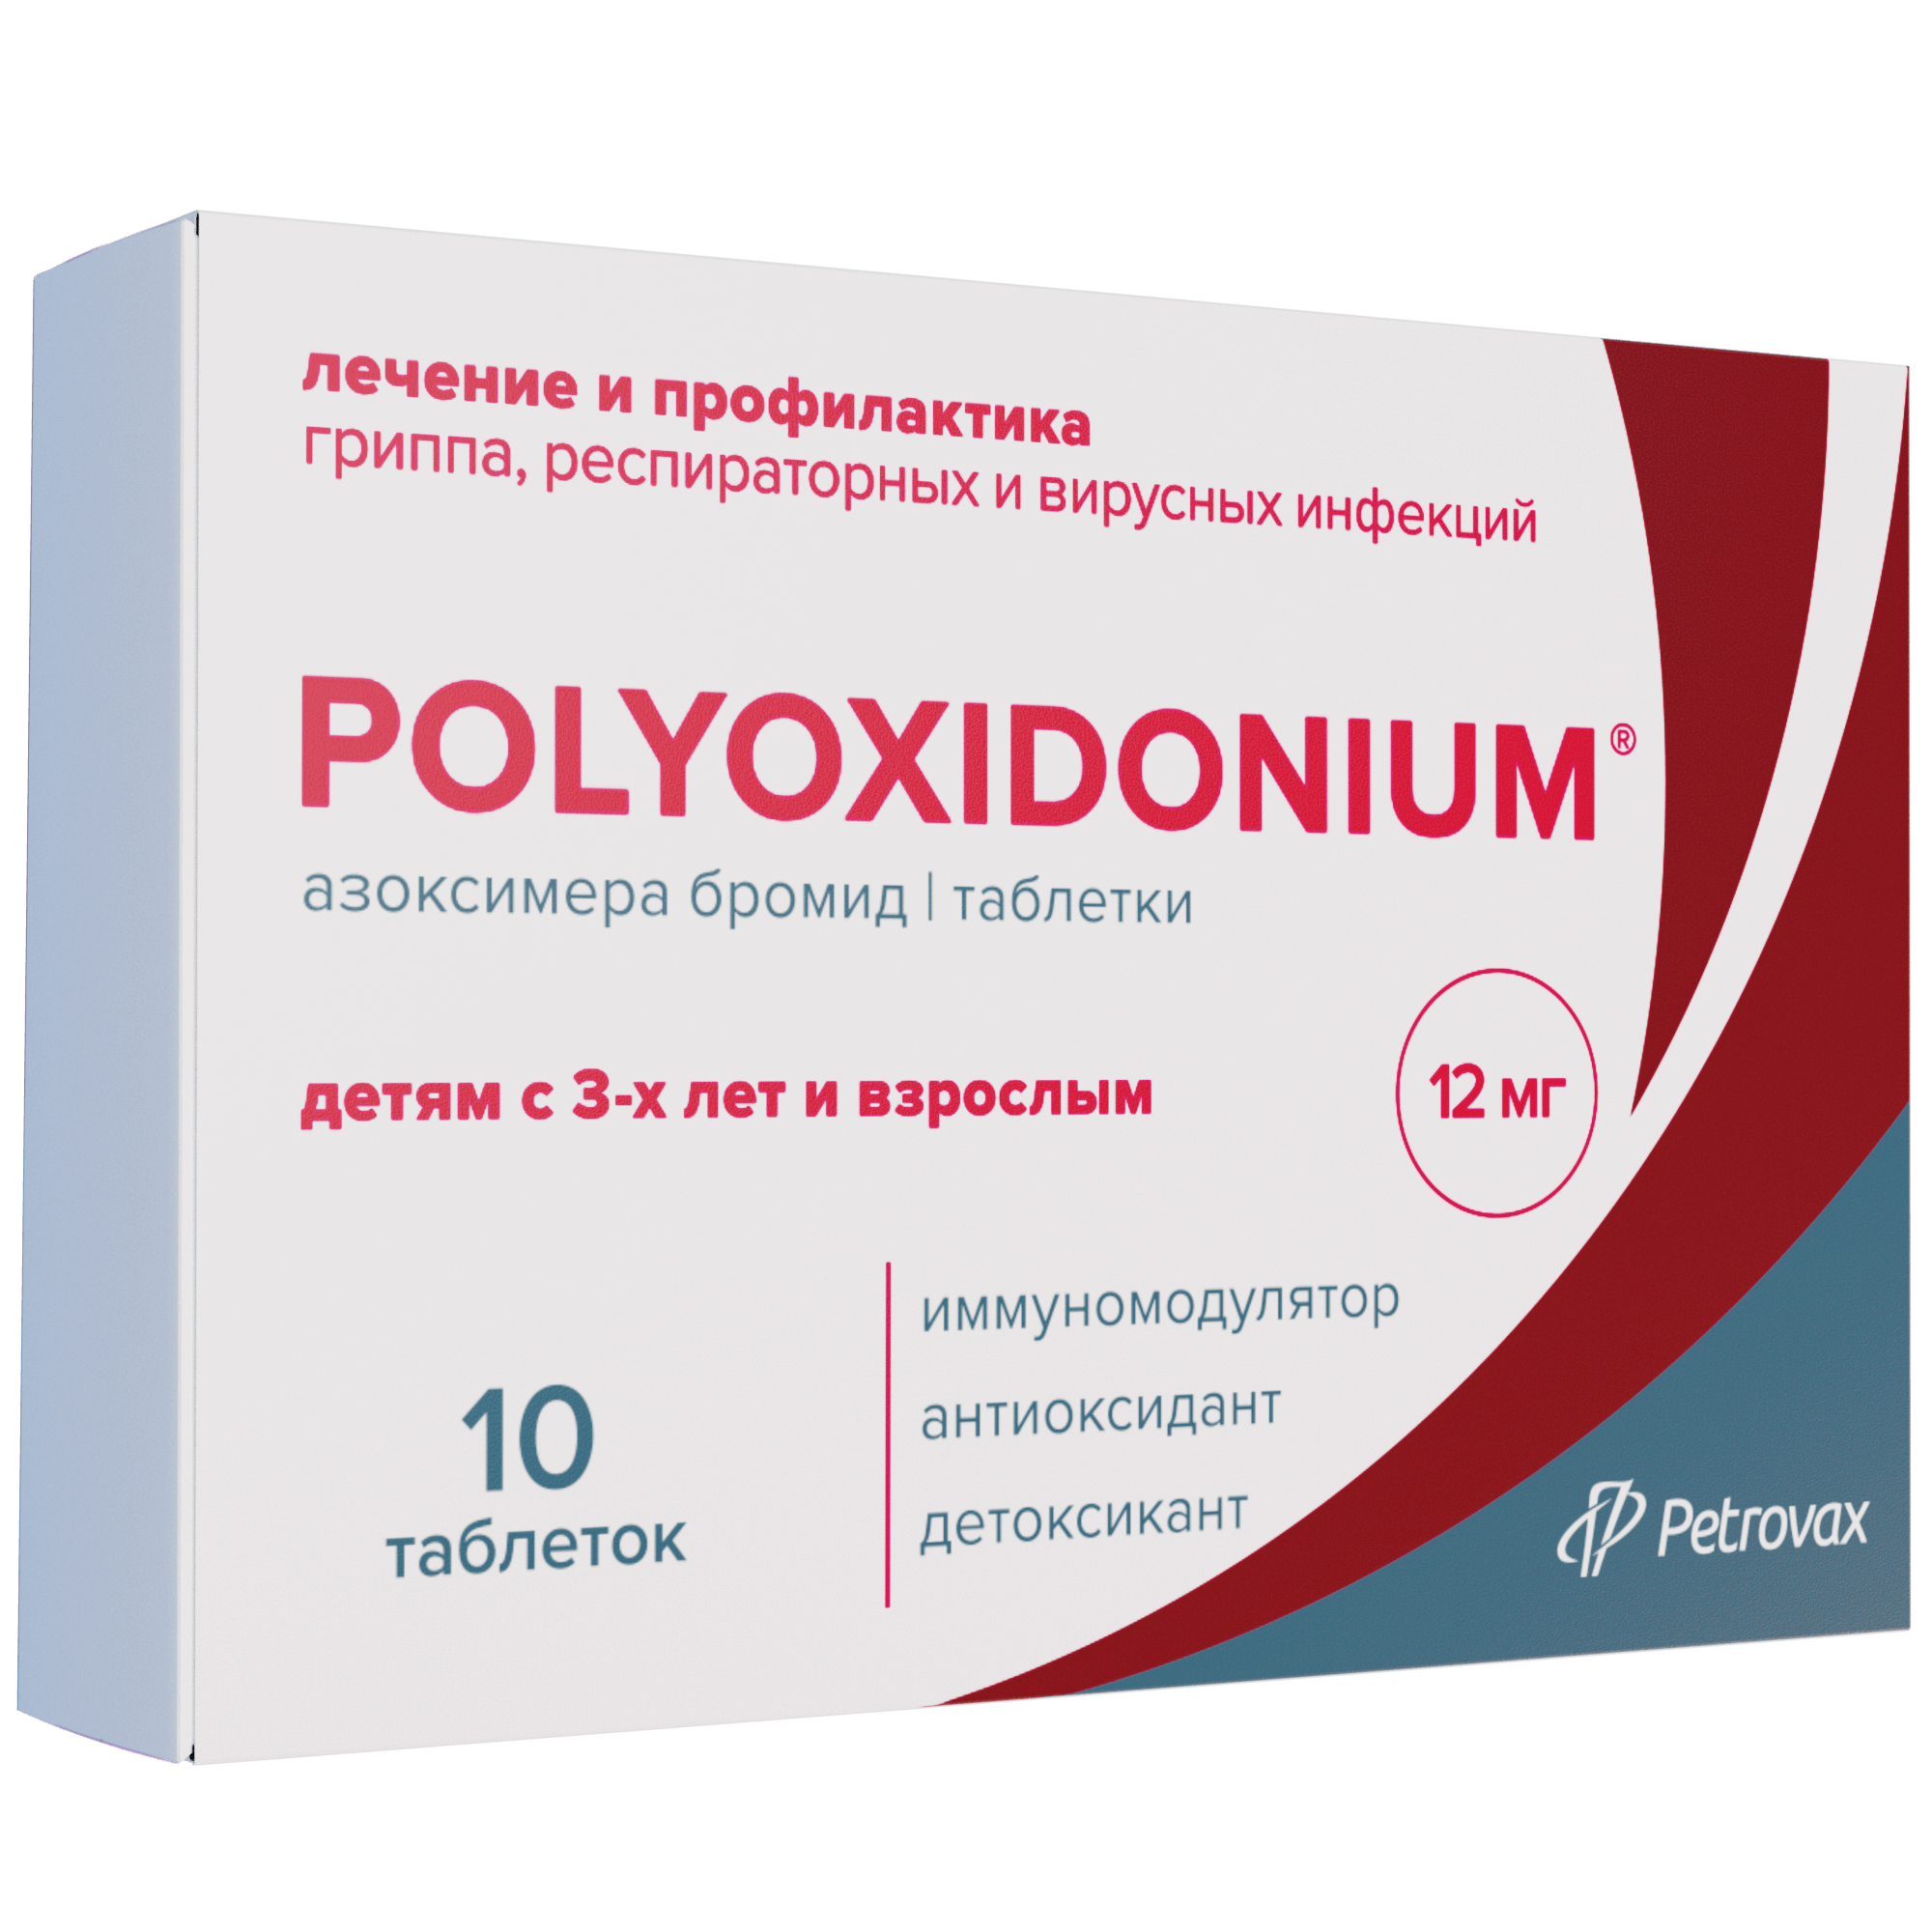 Полиоксидоний упаковка